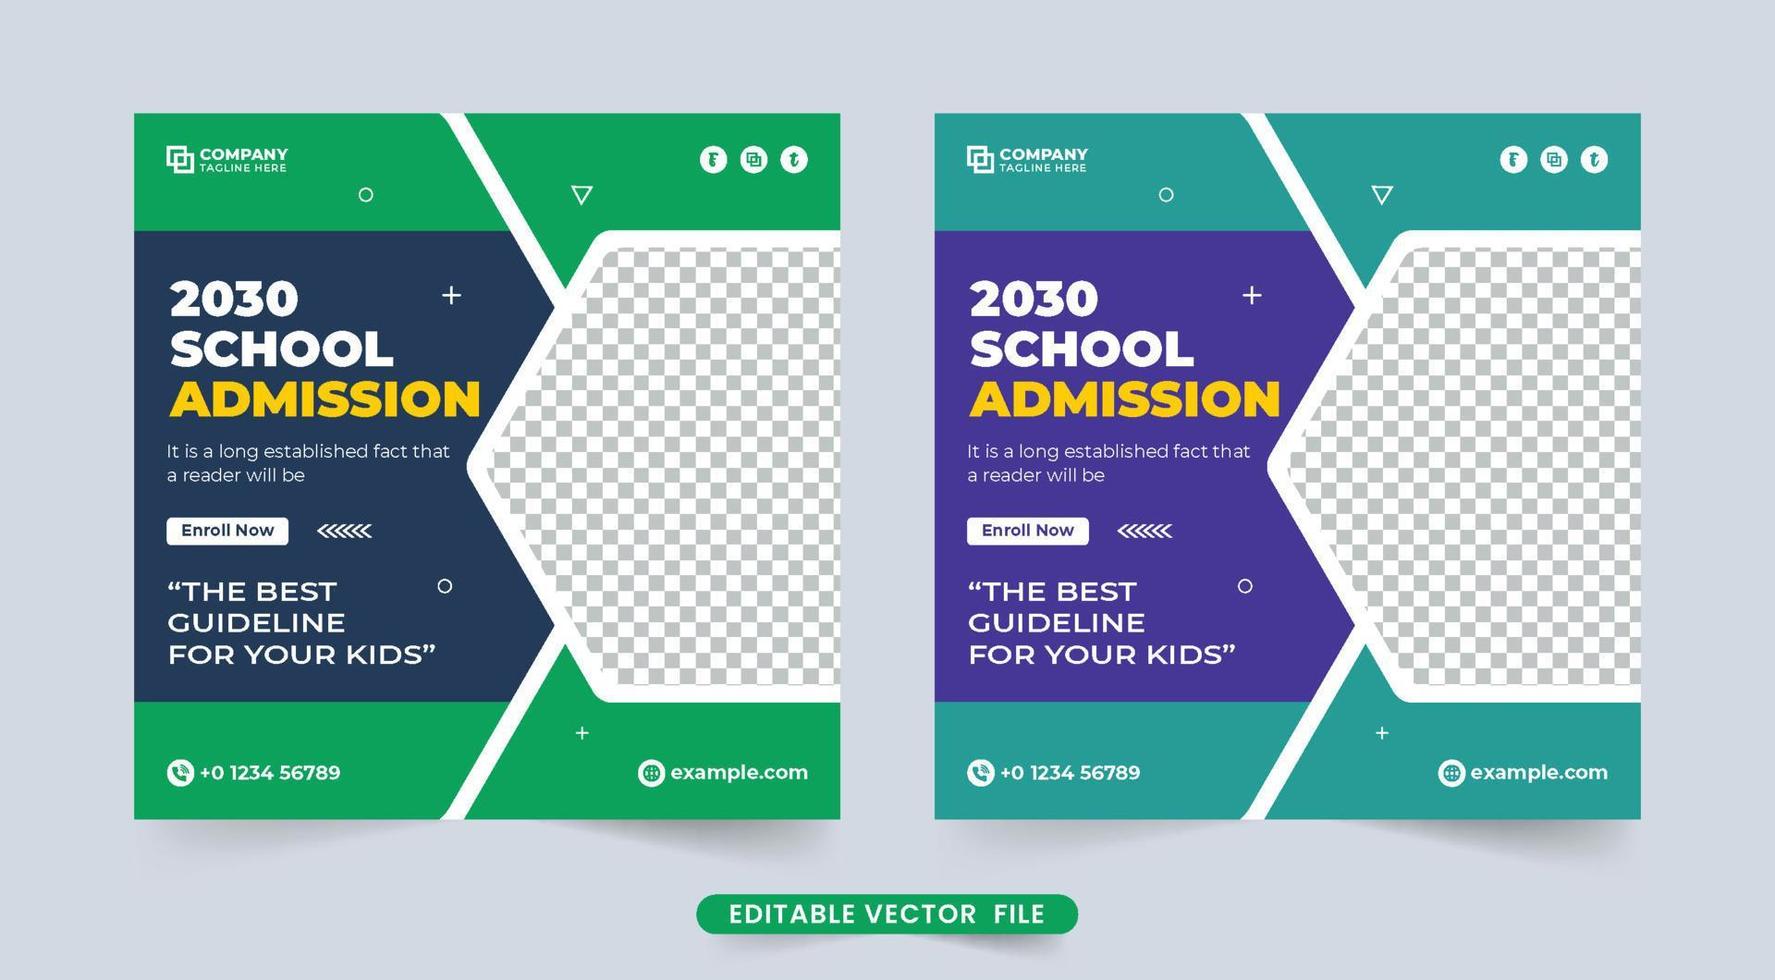 modelo de postagem de mídia social de admissão escolar com cores verdes e escuras. vetor de modelo de banner web de educação para escolas. banner de promoção de admissão escolar criativa para mídias sociais.